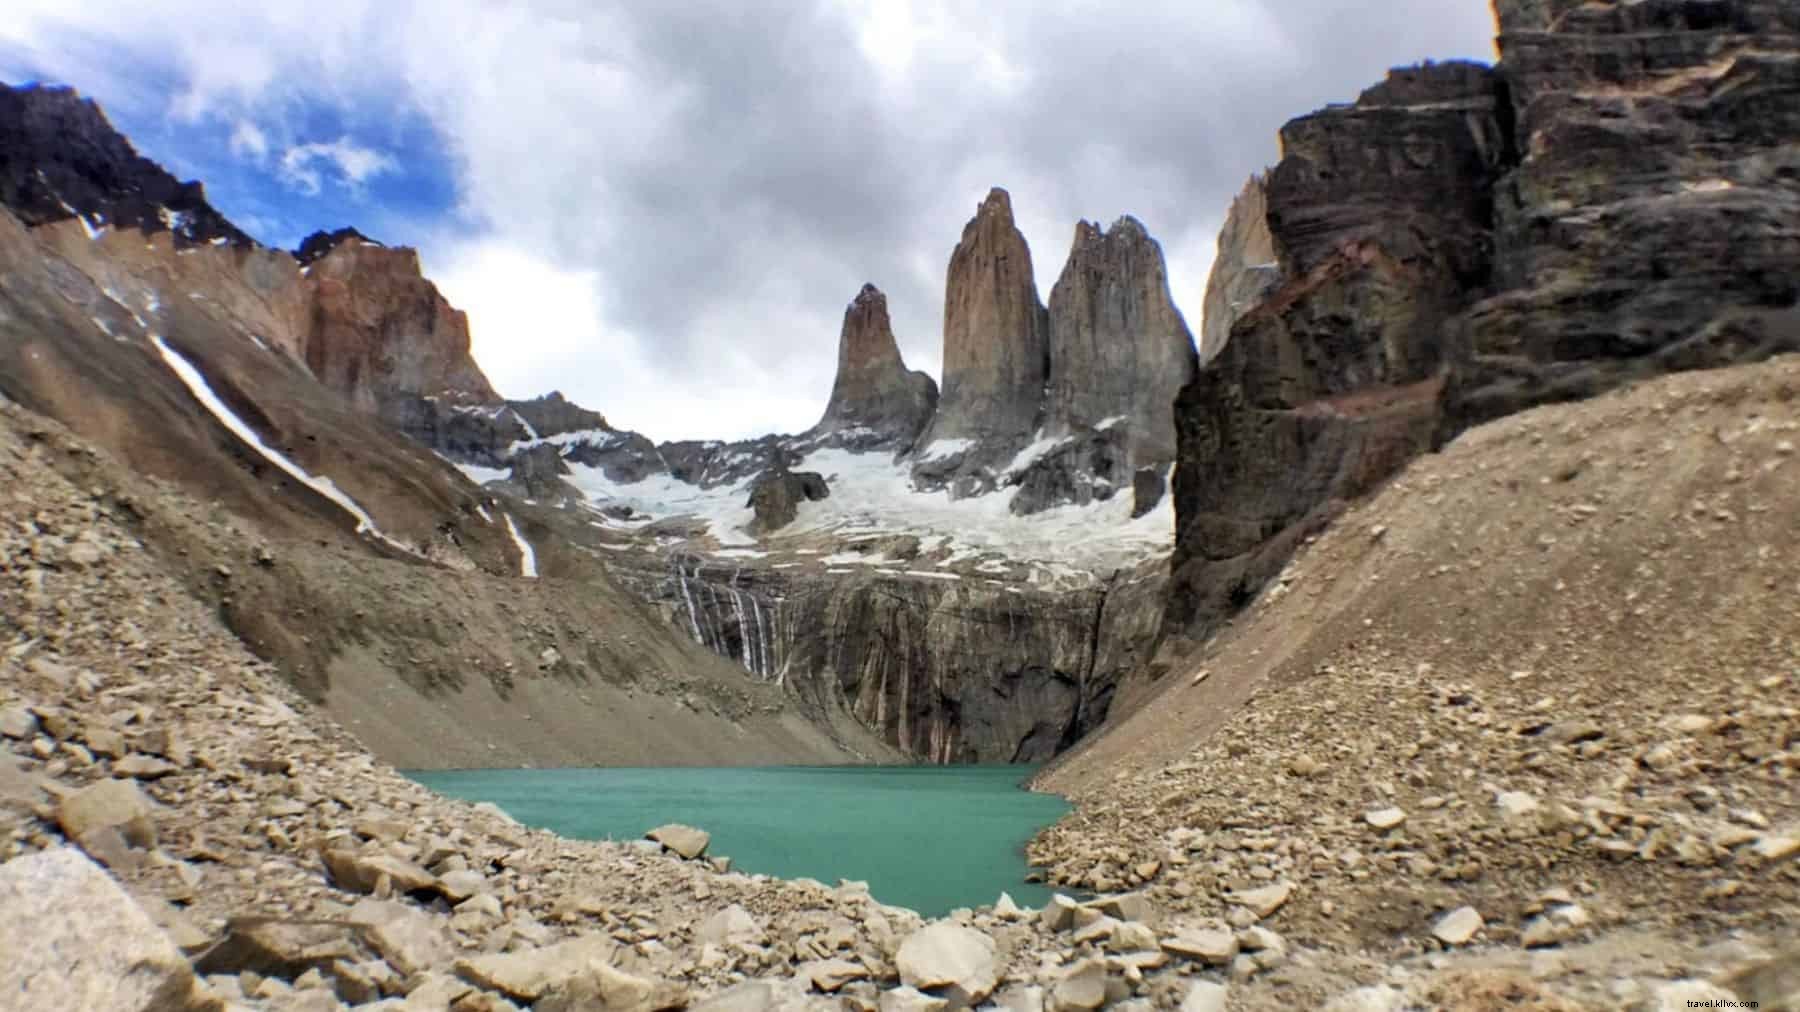 南アメリカで訪問するトップ15の最も美しい場所